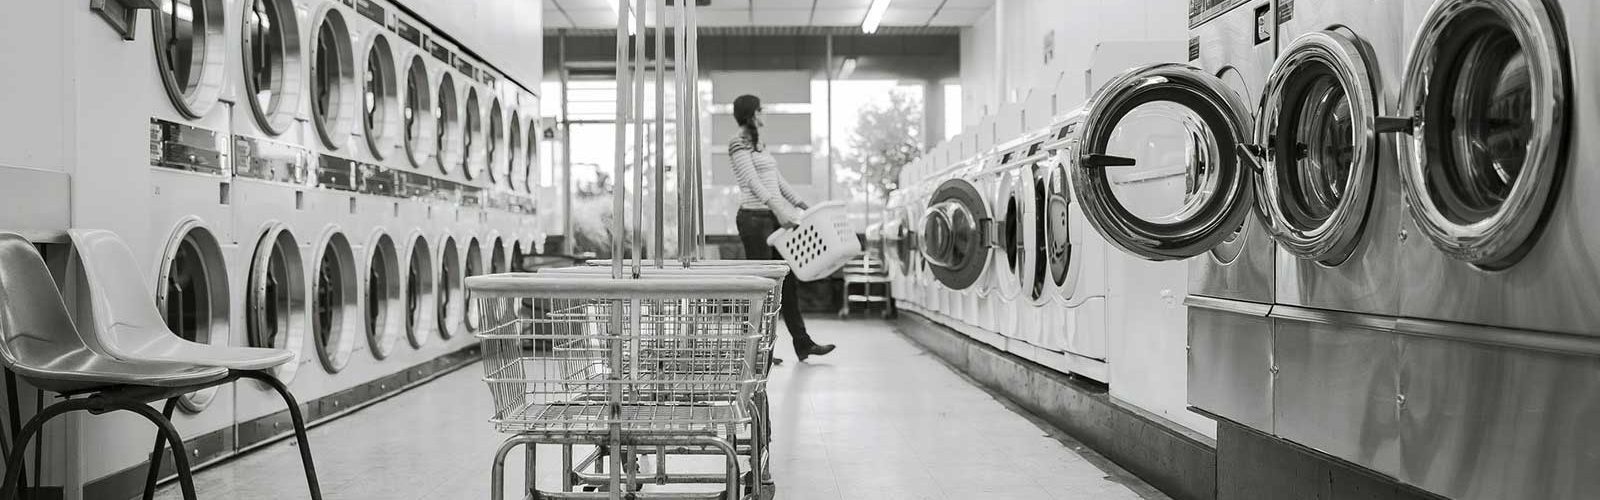 Laundry Nation Optimize Rental Image